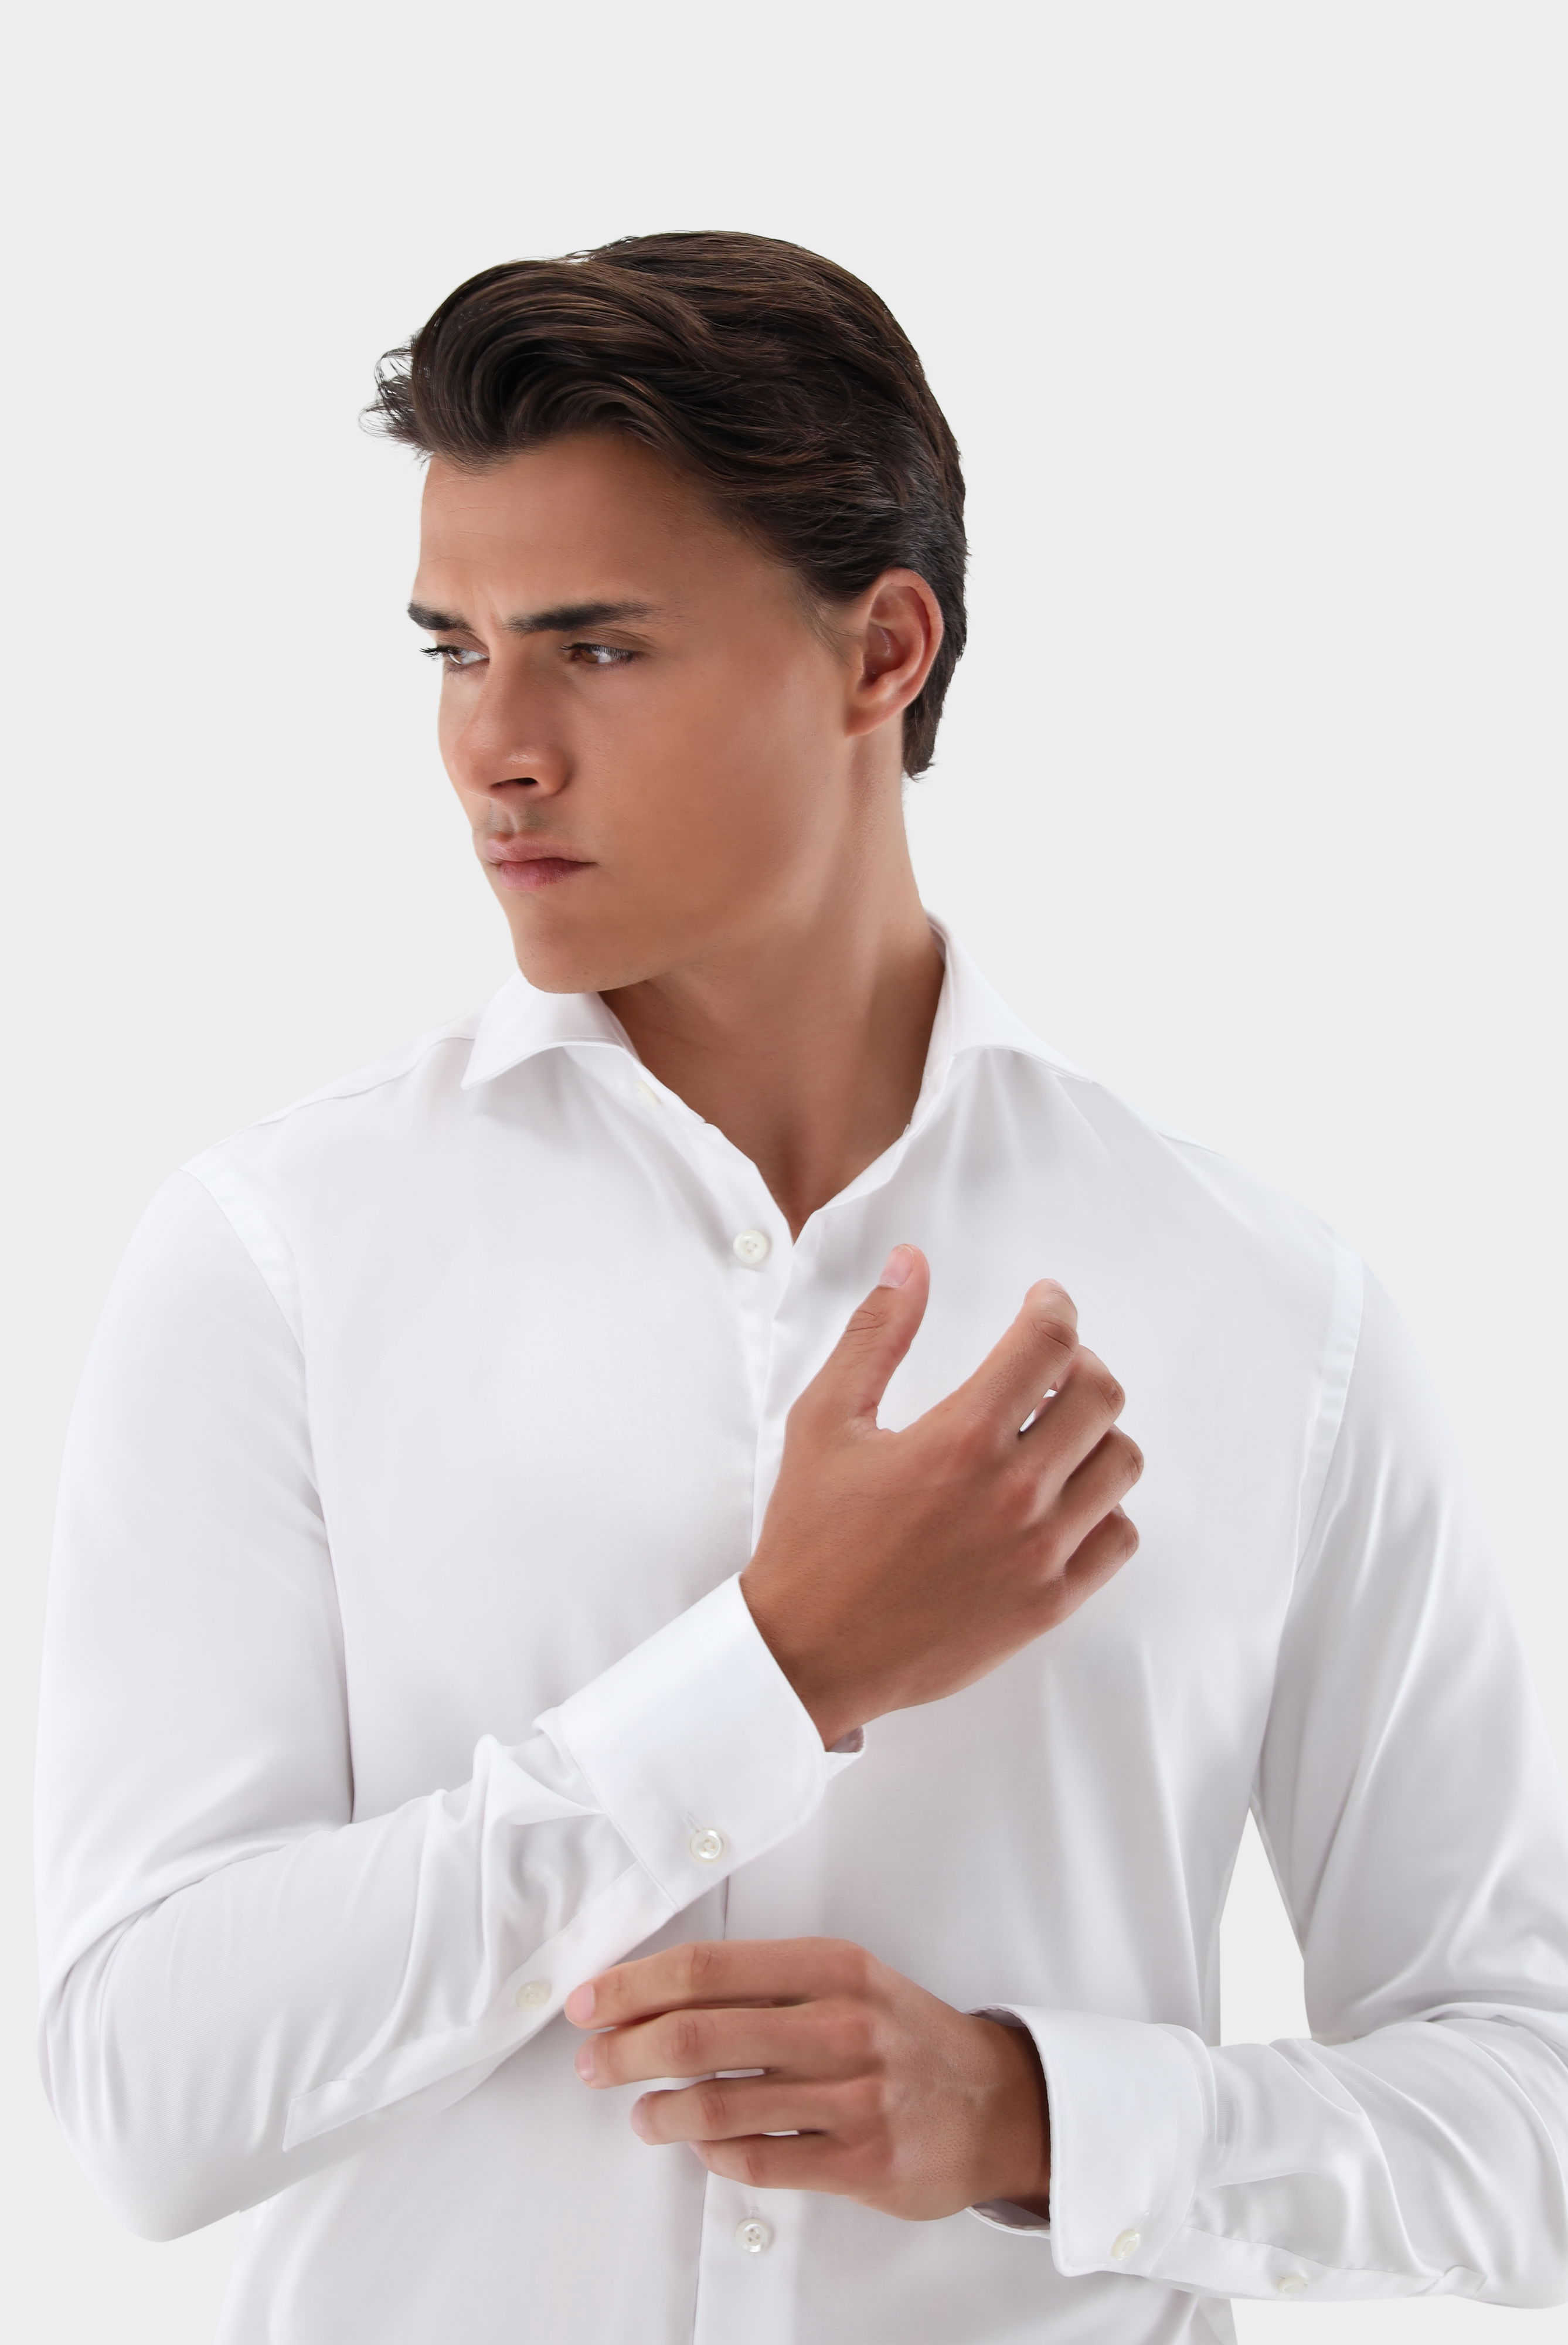 Bügelleichte Hemden+Bügelfreies Hybridshirt mit Jerseyeinsatz Slim Fit+20.2553.0F.132241.000.40